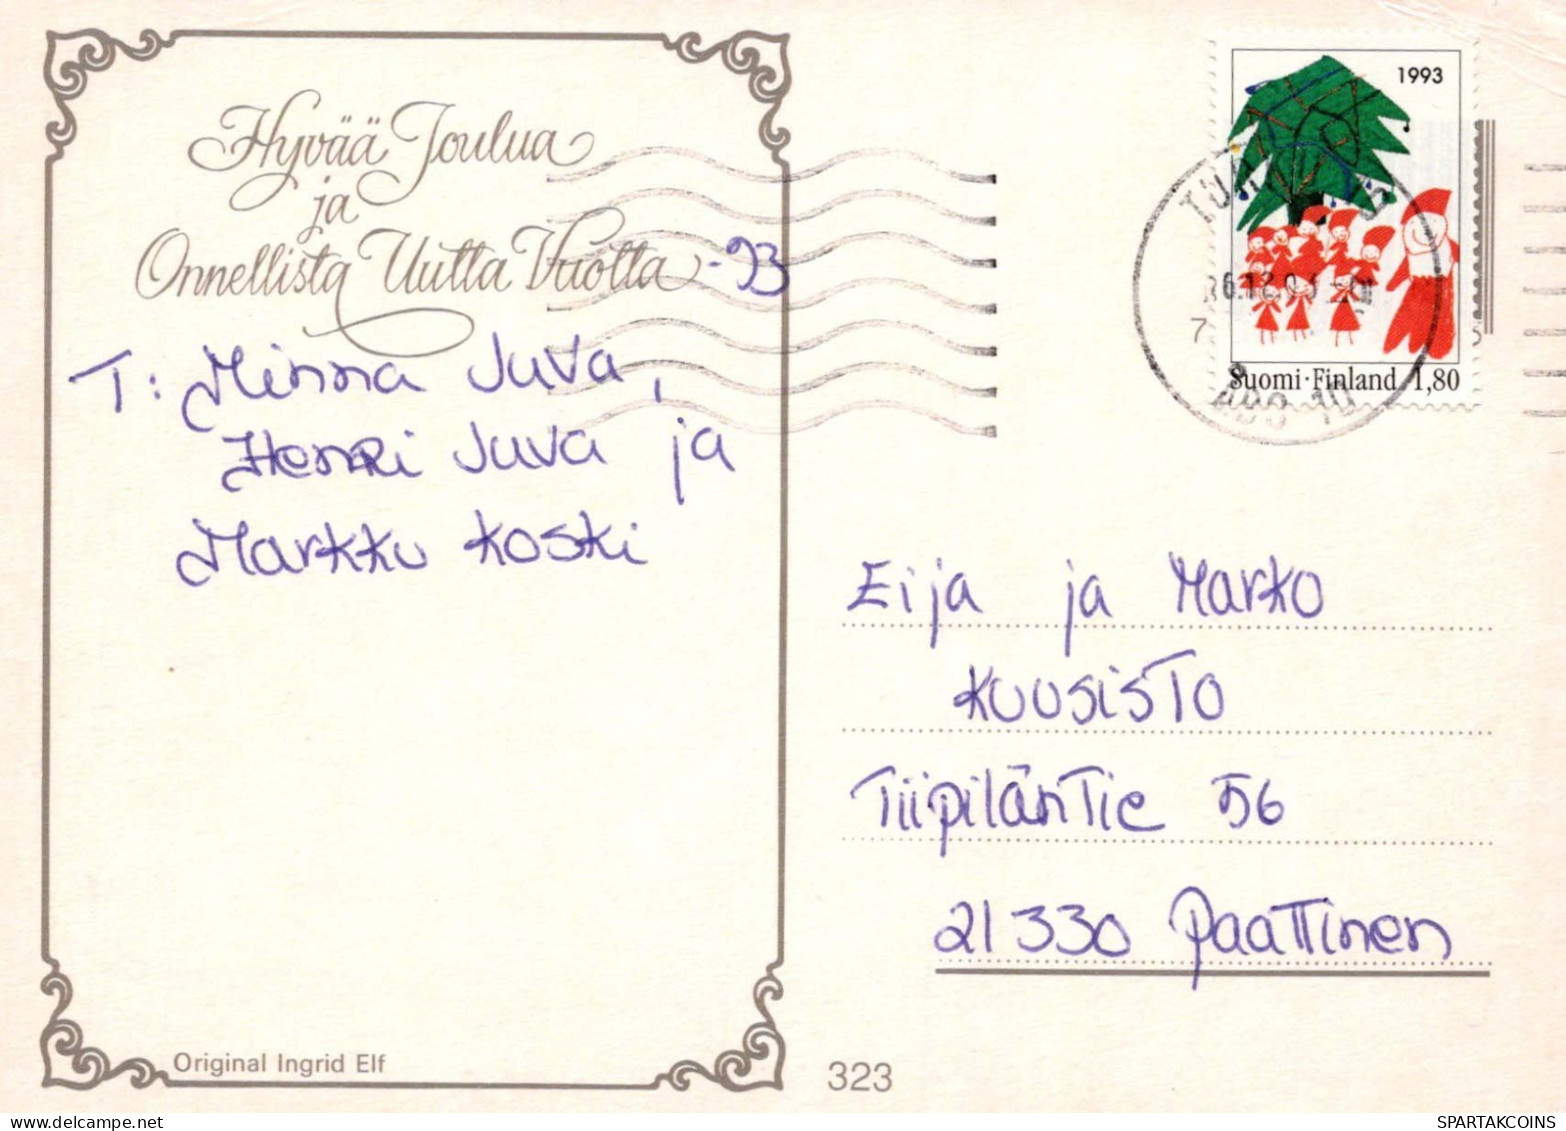 Feliz Año Navidad MUÑECO DE NIEVE Vintage Tarjeta Postal CPSM #PAZ795.ES - New Year